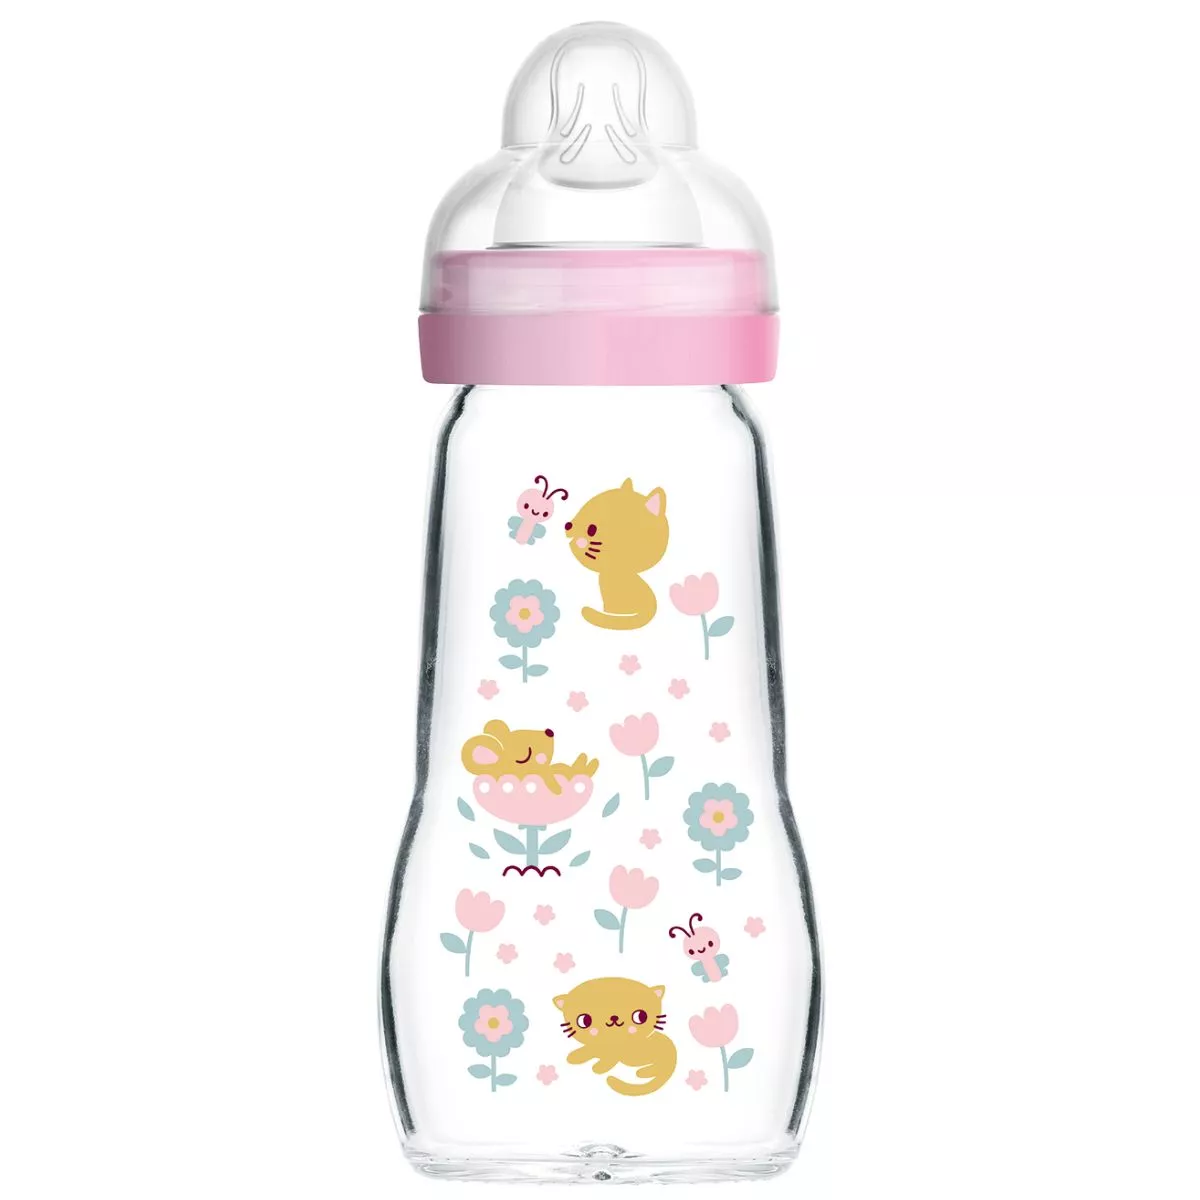 Feel Good 260ml Organic Garden - Glass Baby Bottle